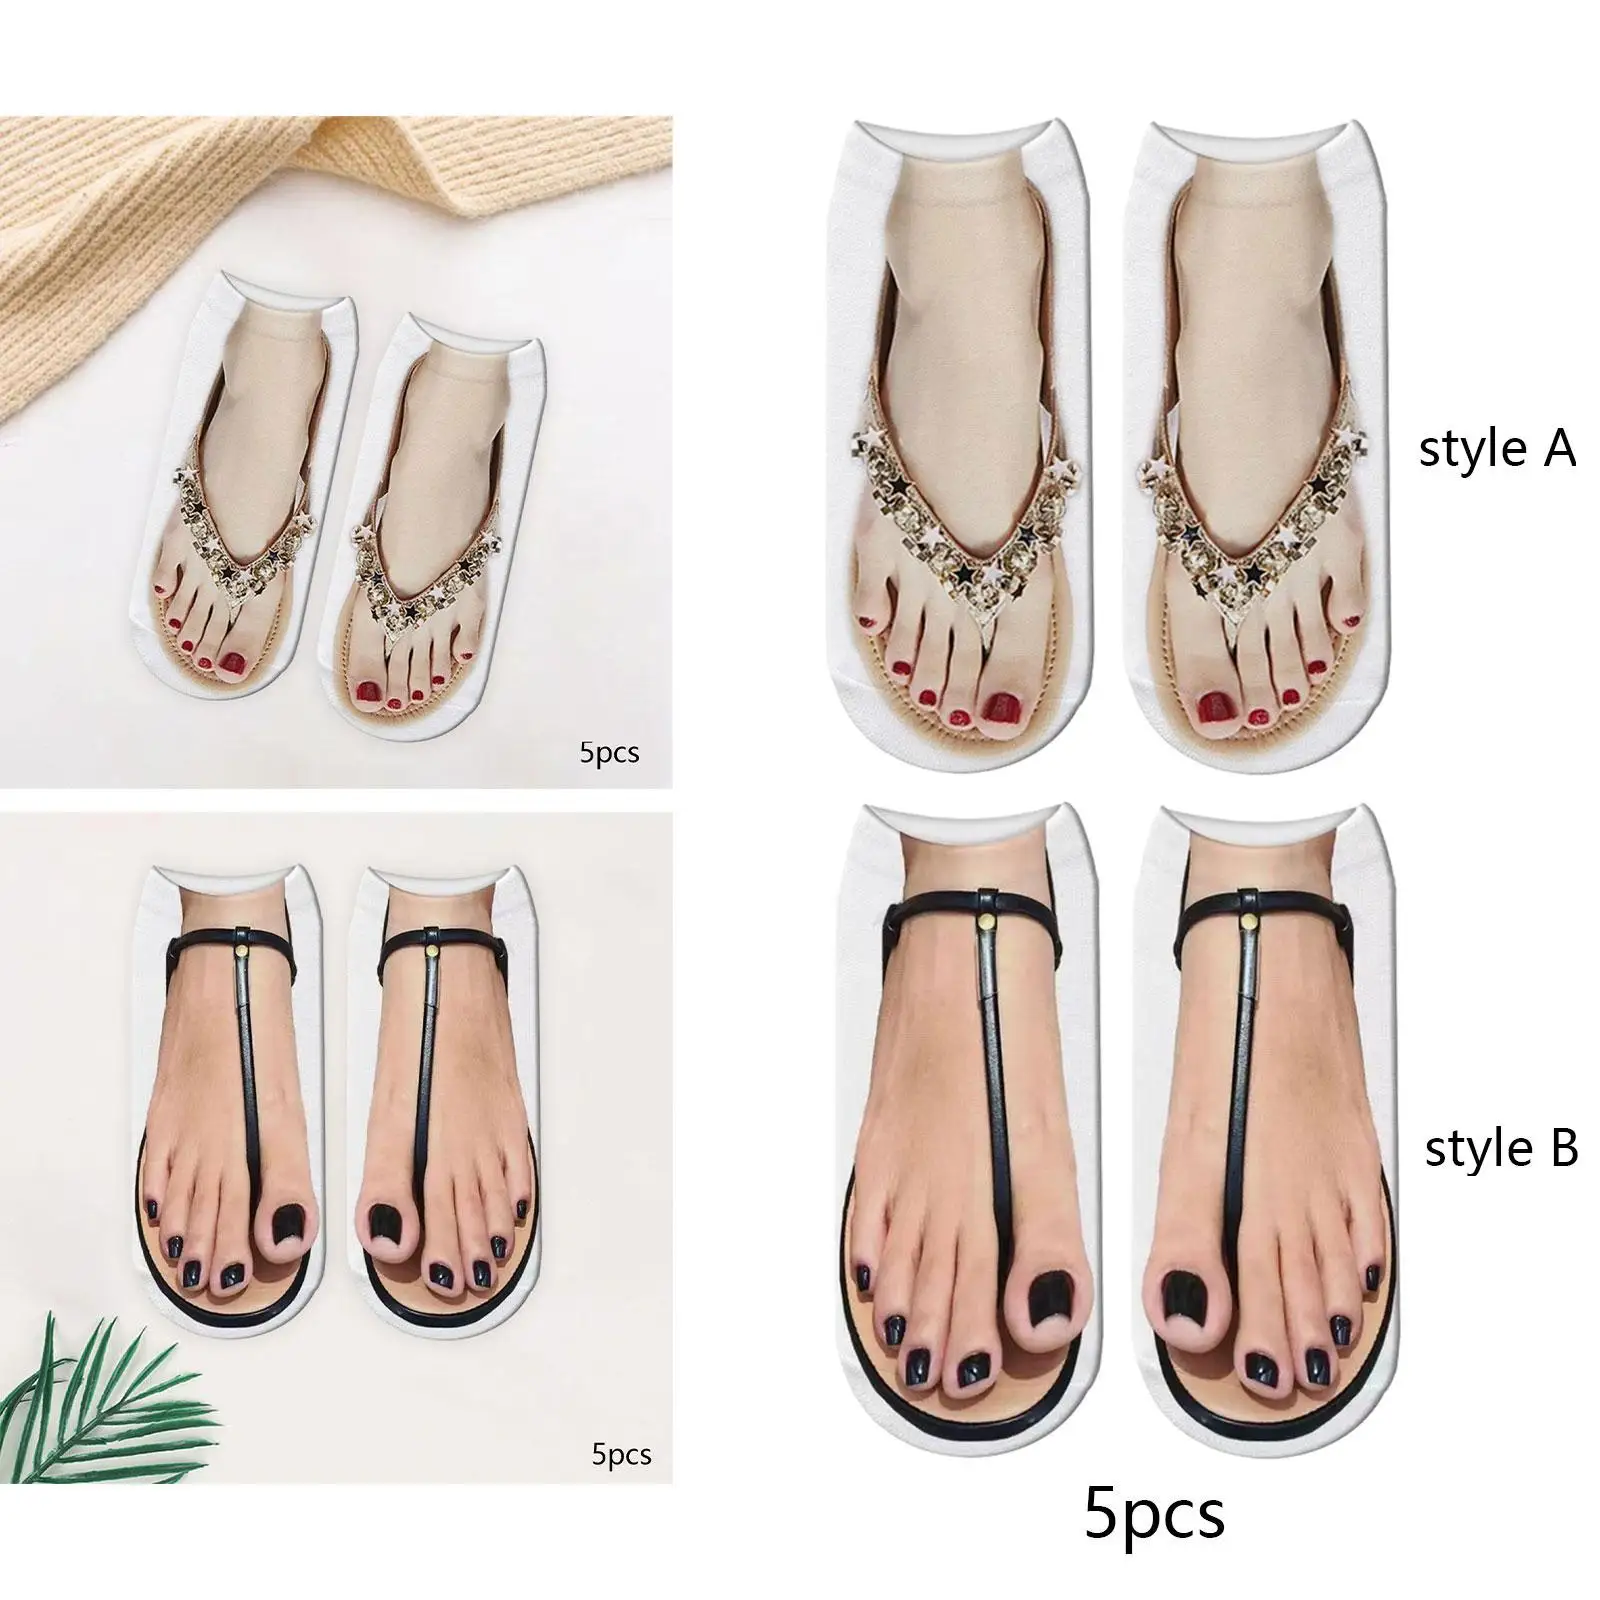 Manicure Print Socks Hidden Novelty 3D Pattern Socks Funny Stocking Ankle Socks for Women Girls Yoga Christmas Walking Halloween